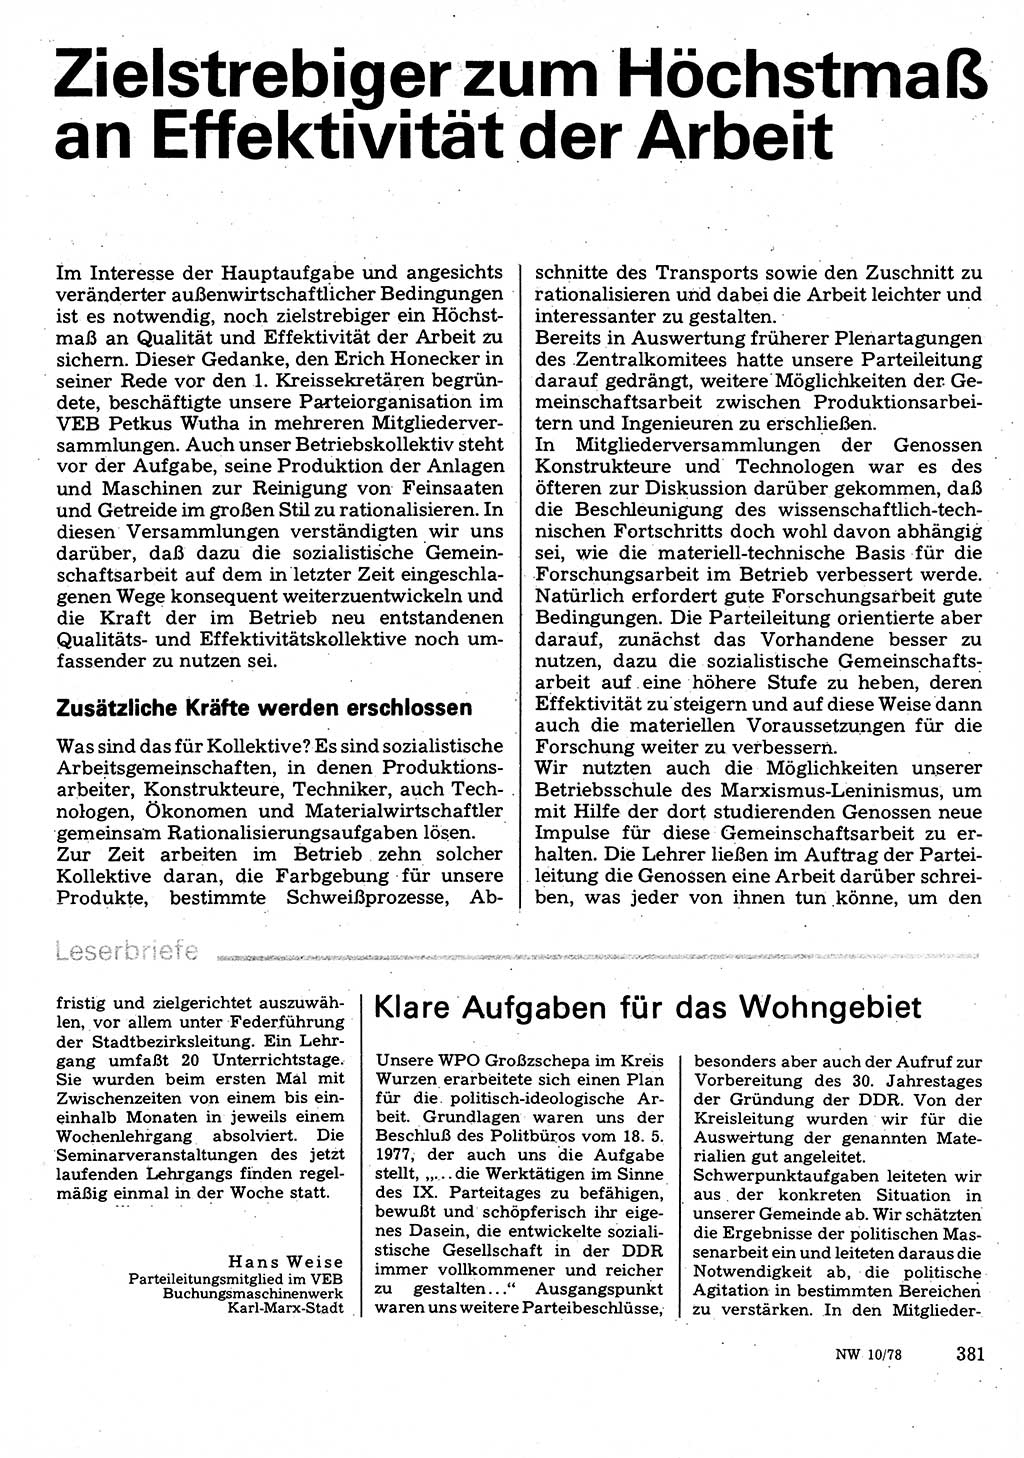 Neuer Weg (NW), Organ des Zentralkomitees (ZK) der SED (Sozialistische Einheitspartei Deutschlands) für Fragen des Parteilebens, 33. Jahrgang [Deutsche Demokratische Republik (DDR)] 1978, Seite 381 (NW ZK SED DDR 1978, S. 381)